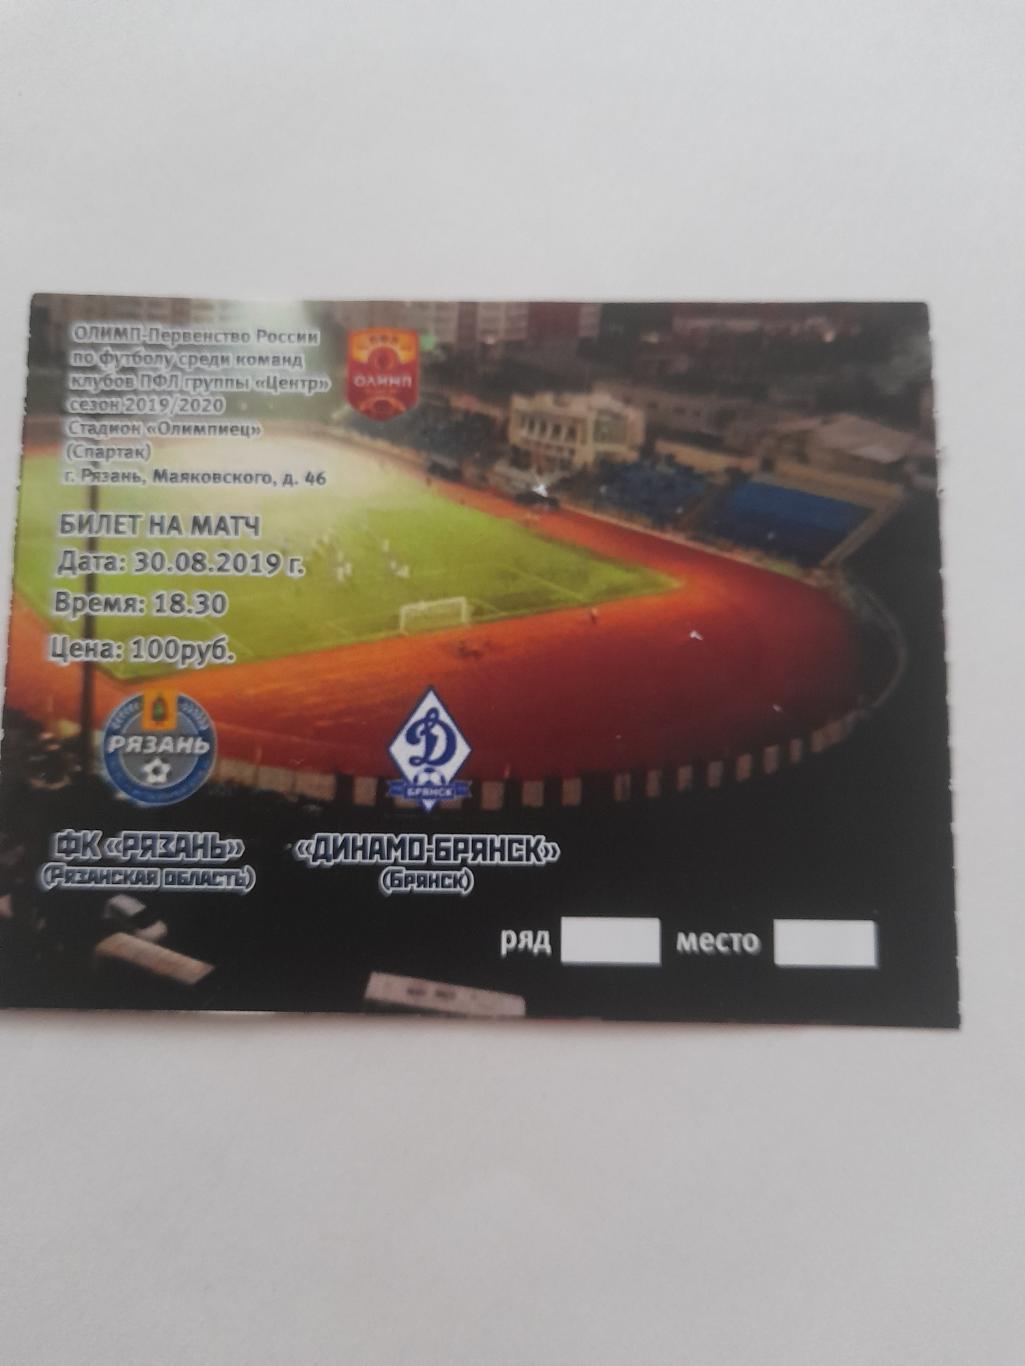 Рязань - Брянск 2019 билет